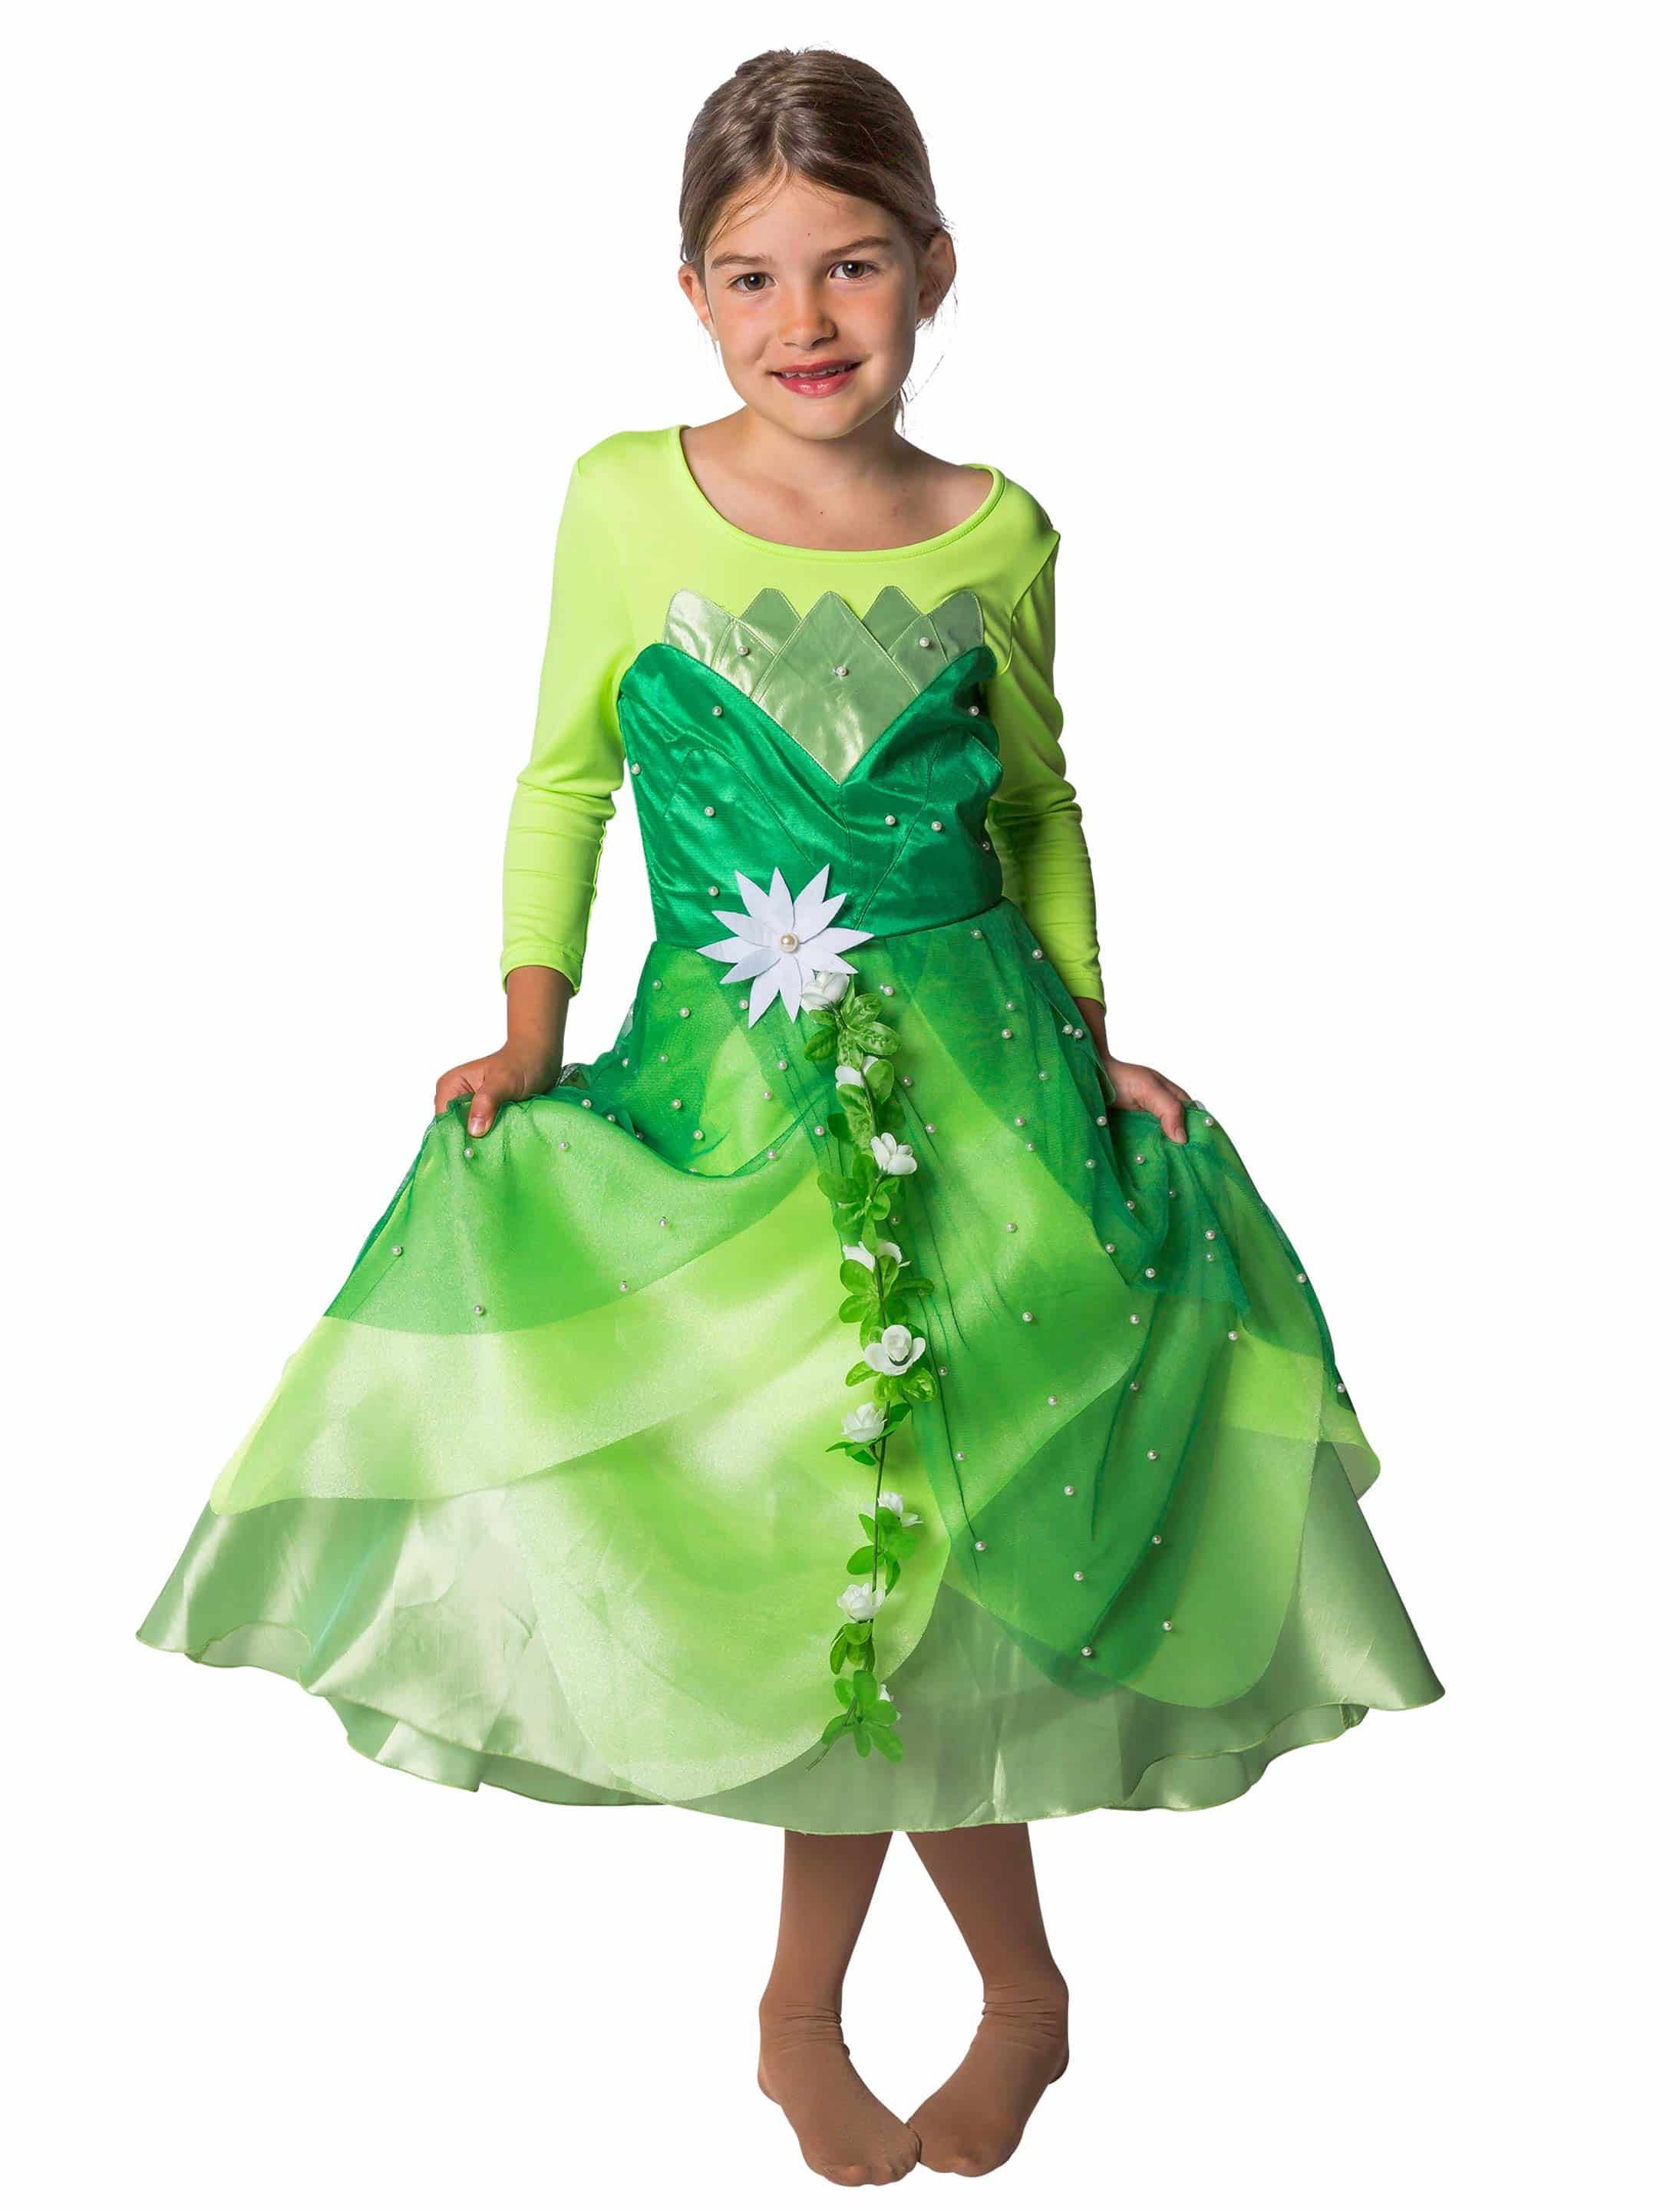 Kleid Froschkönigin Kinder grün 128